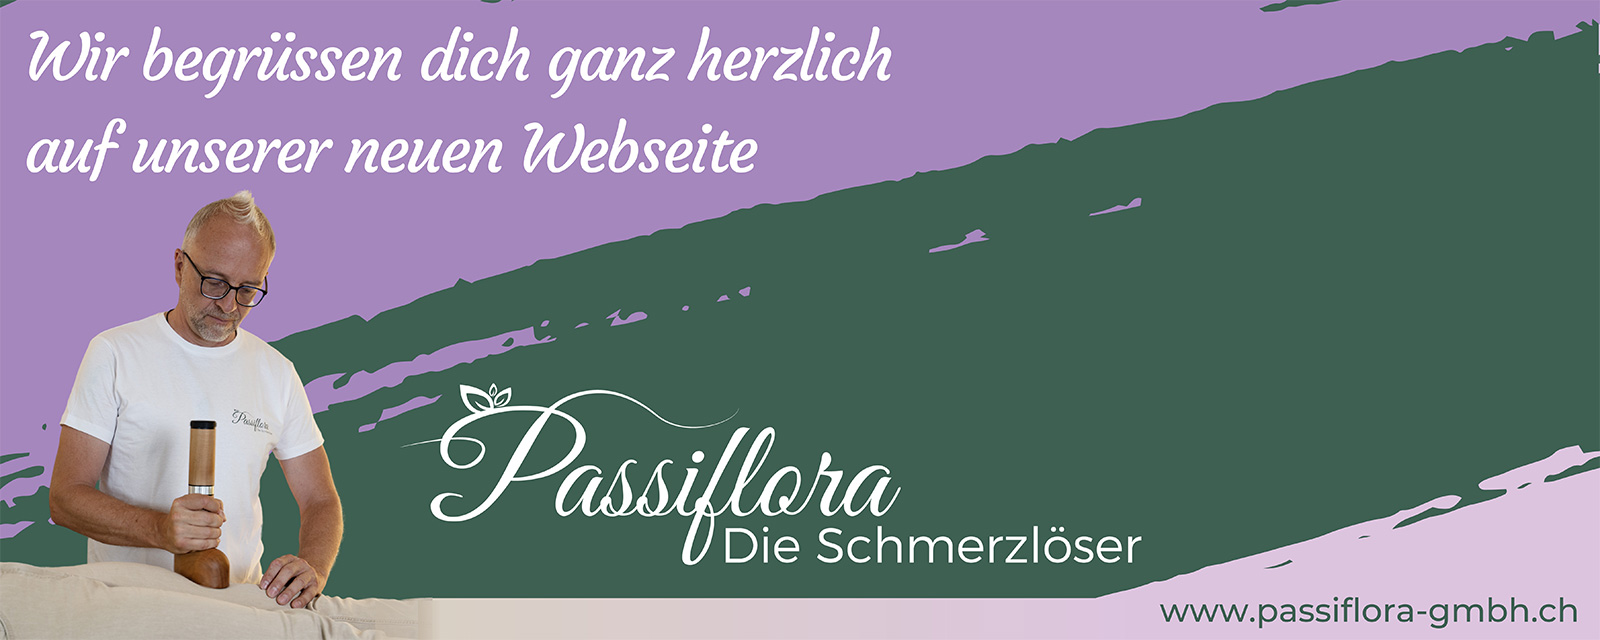 (c) Passiflora-gmbh.ch